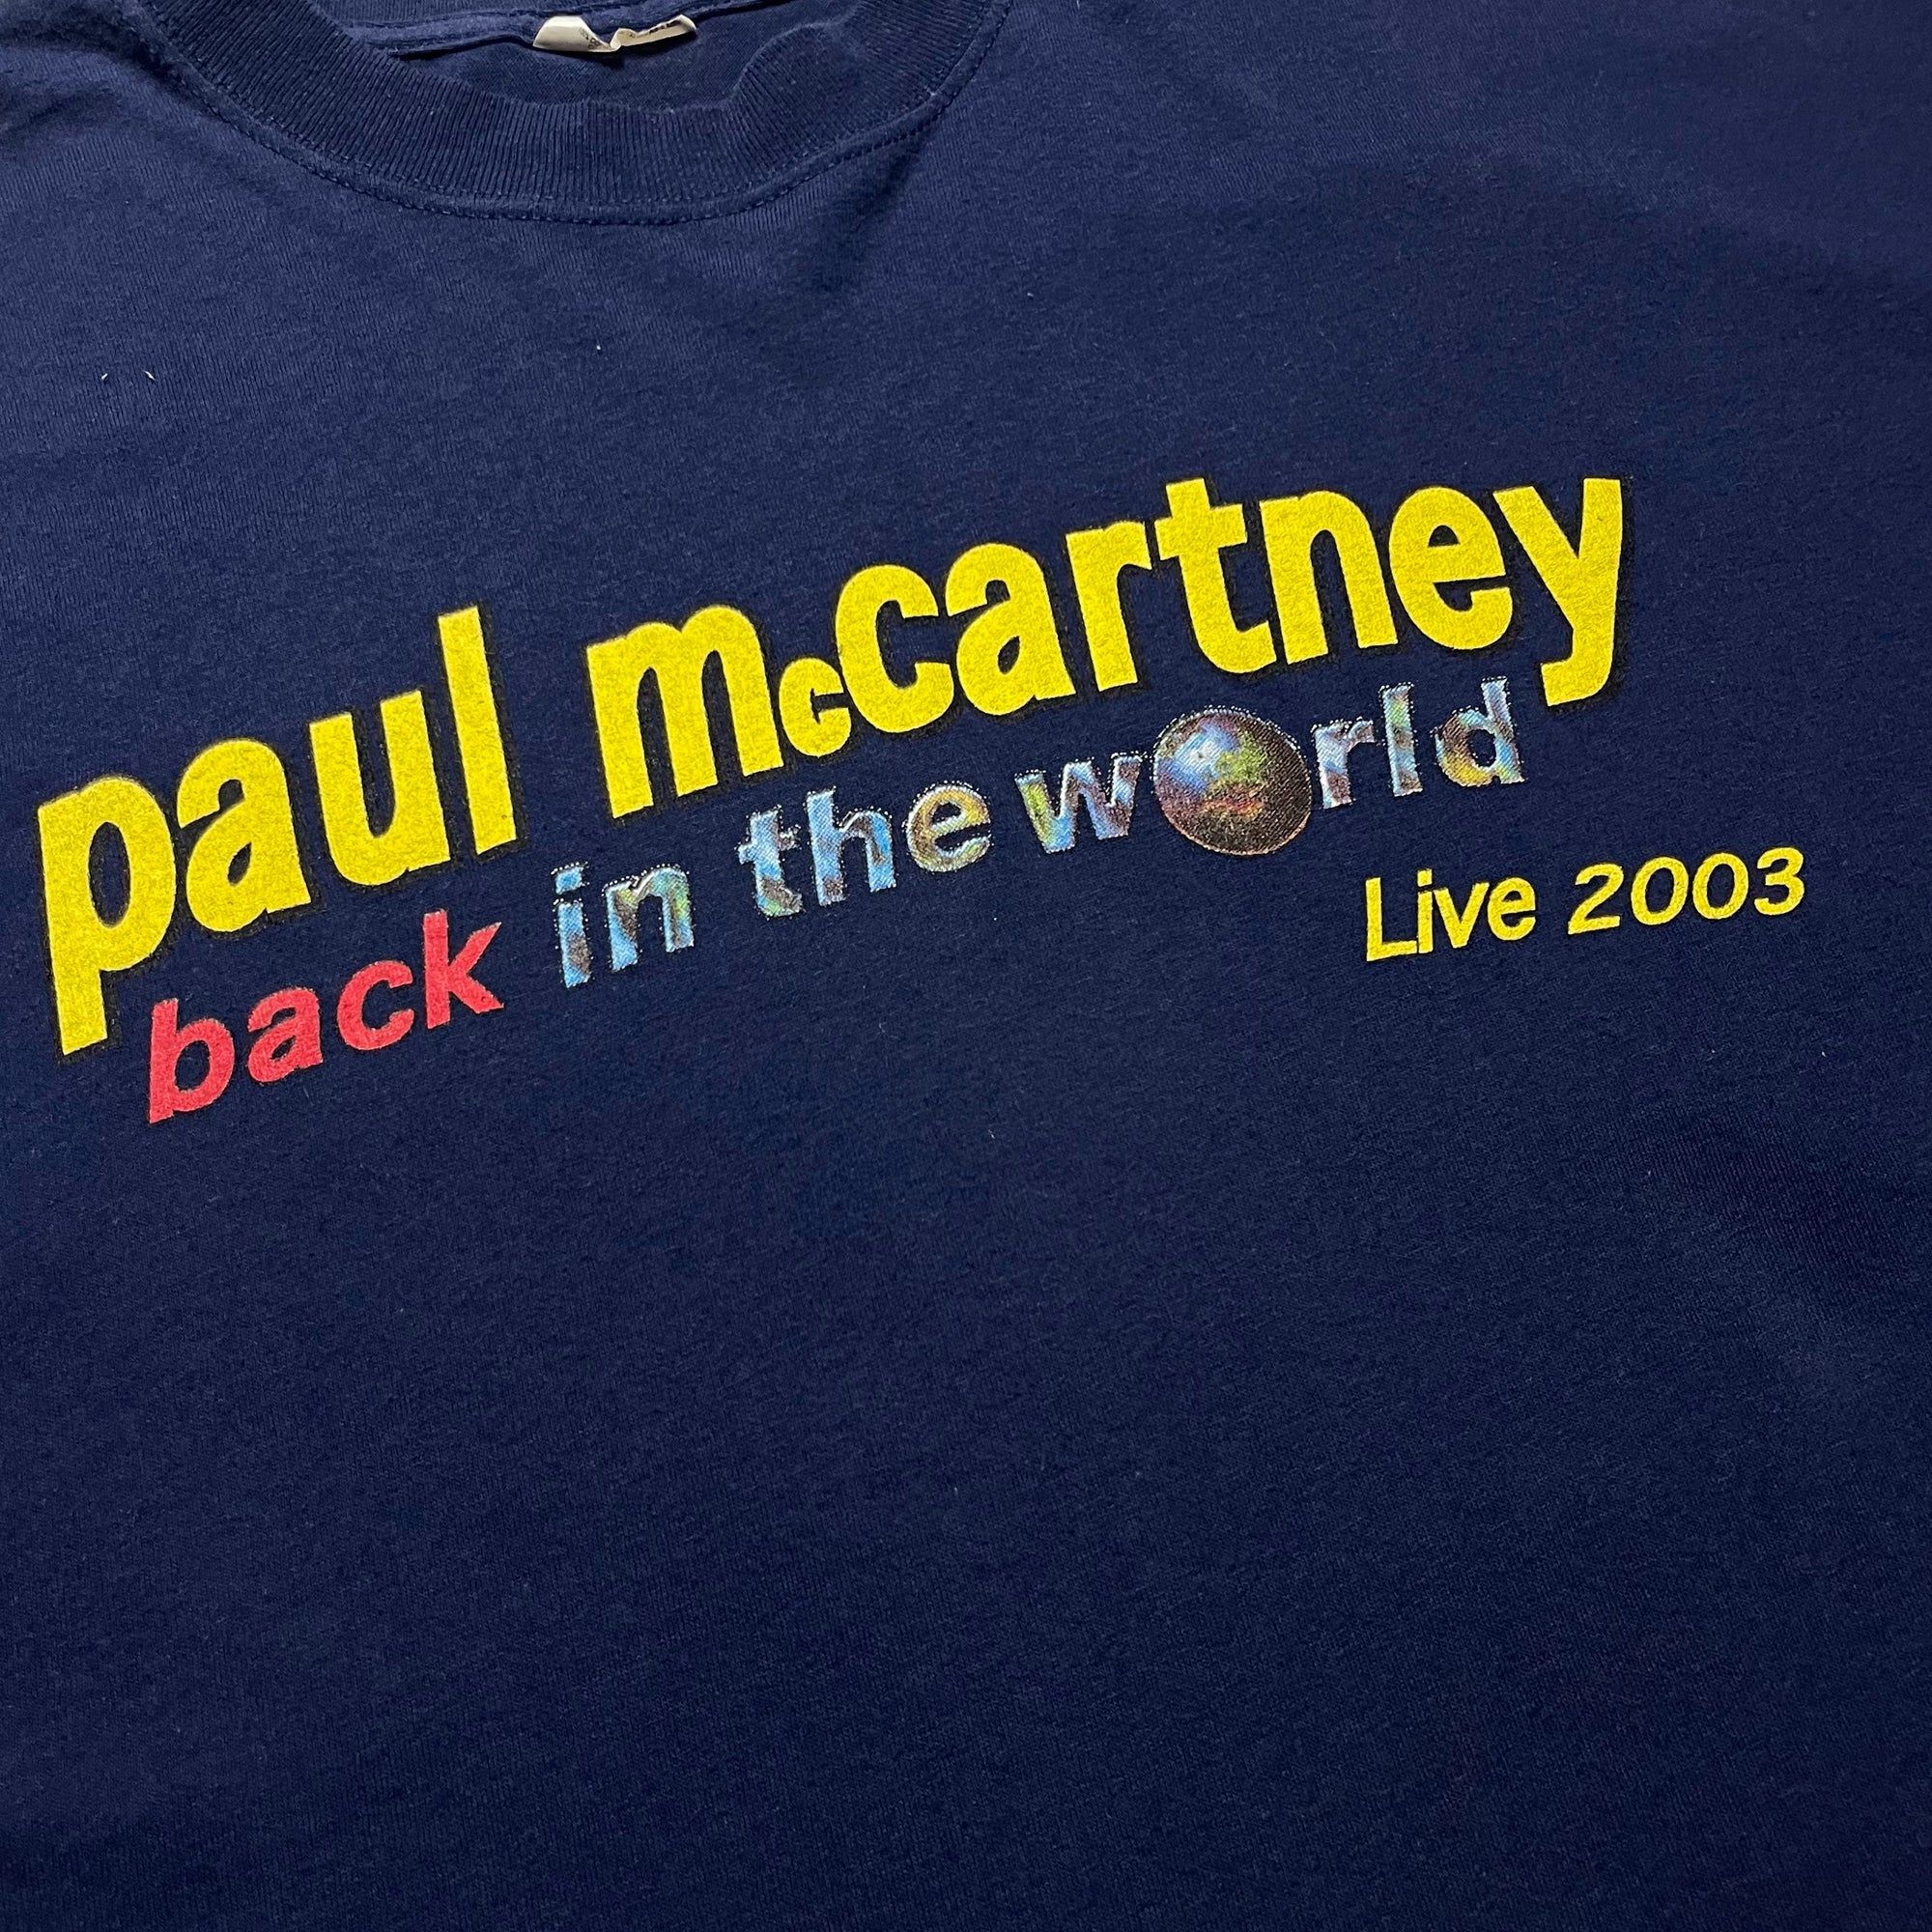 T-shirt - Paul McCartney - Bleu